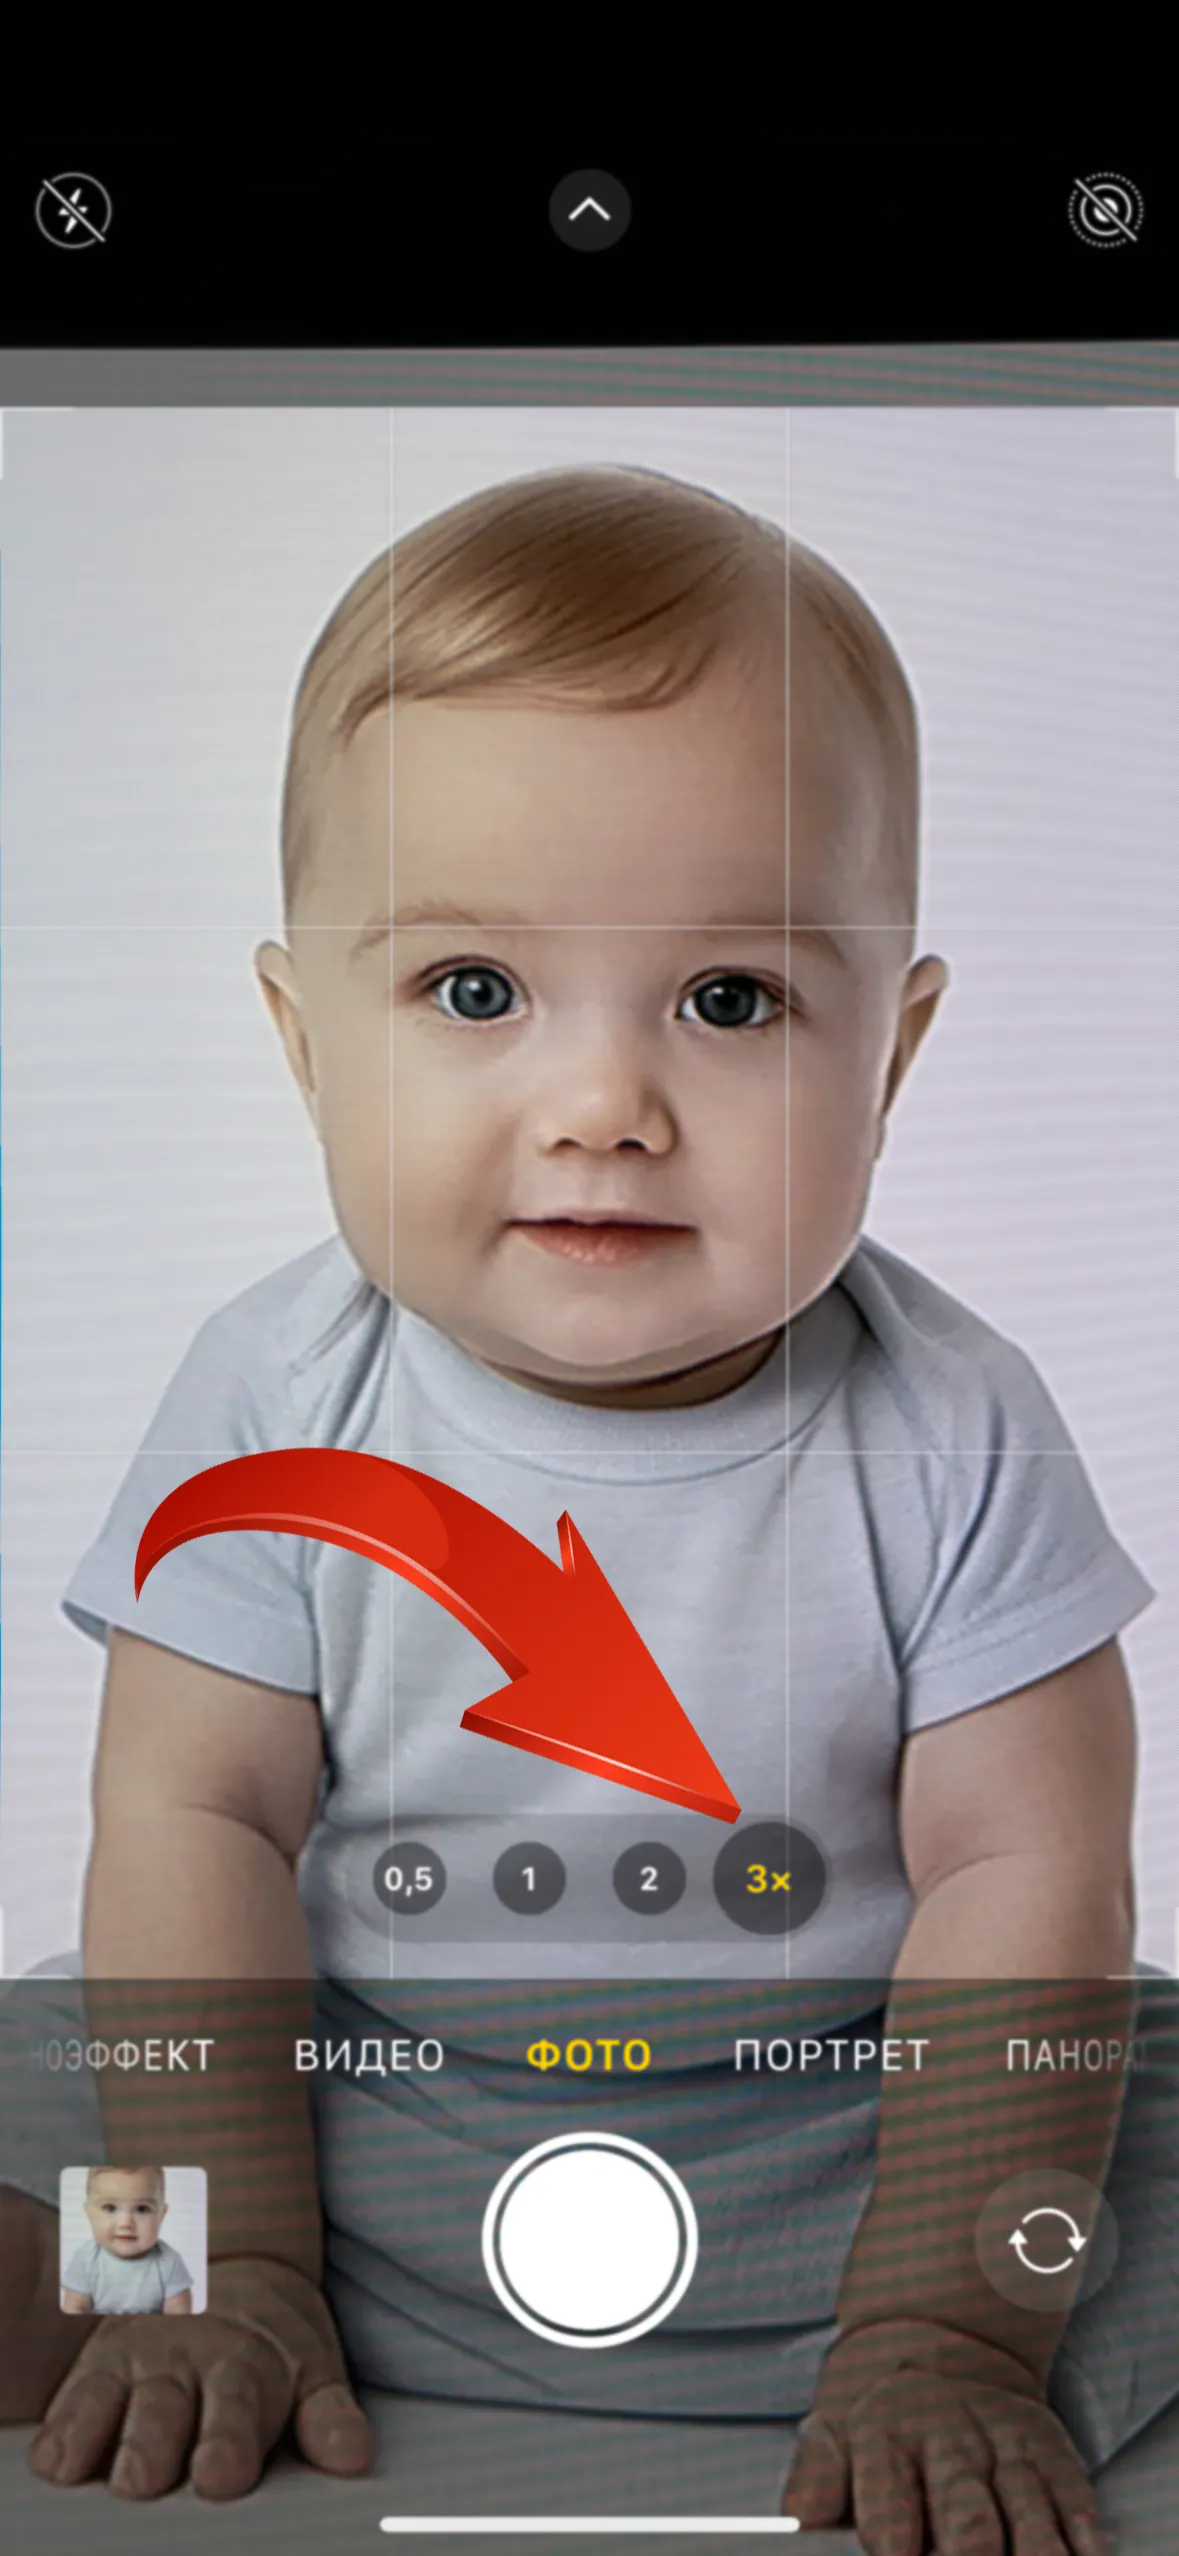 Как сделать фото на документы младенцу